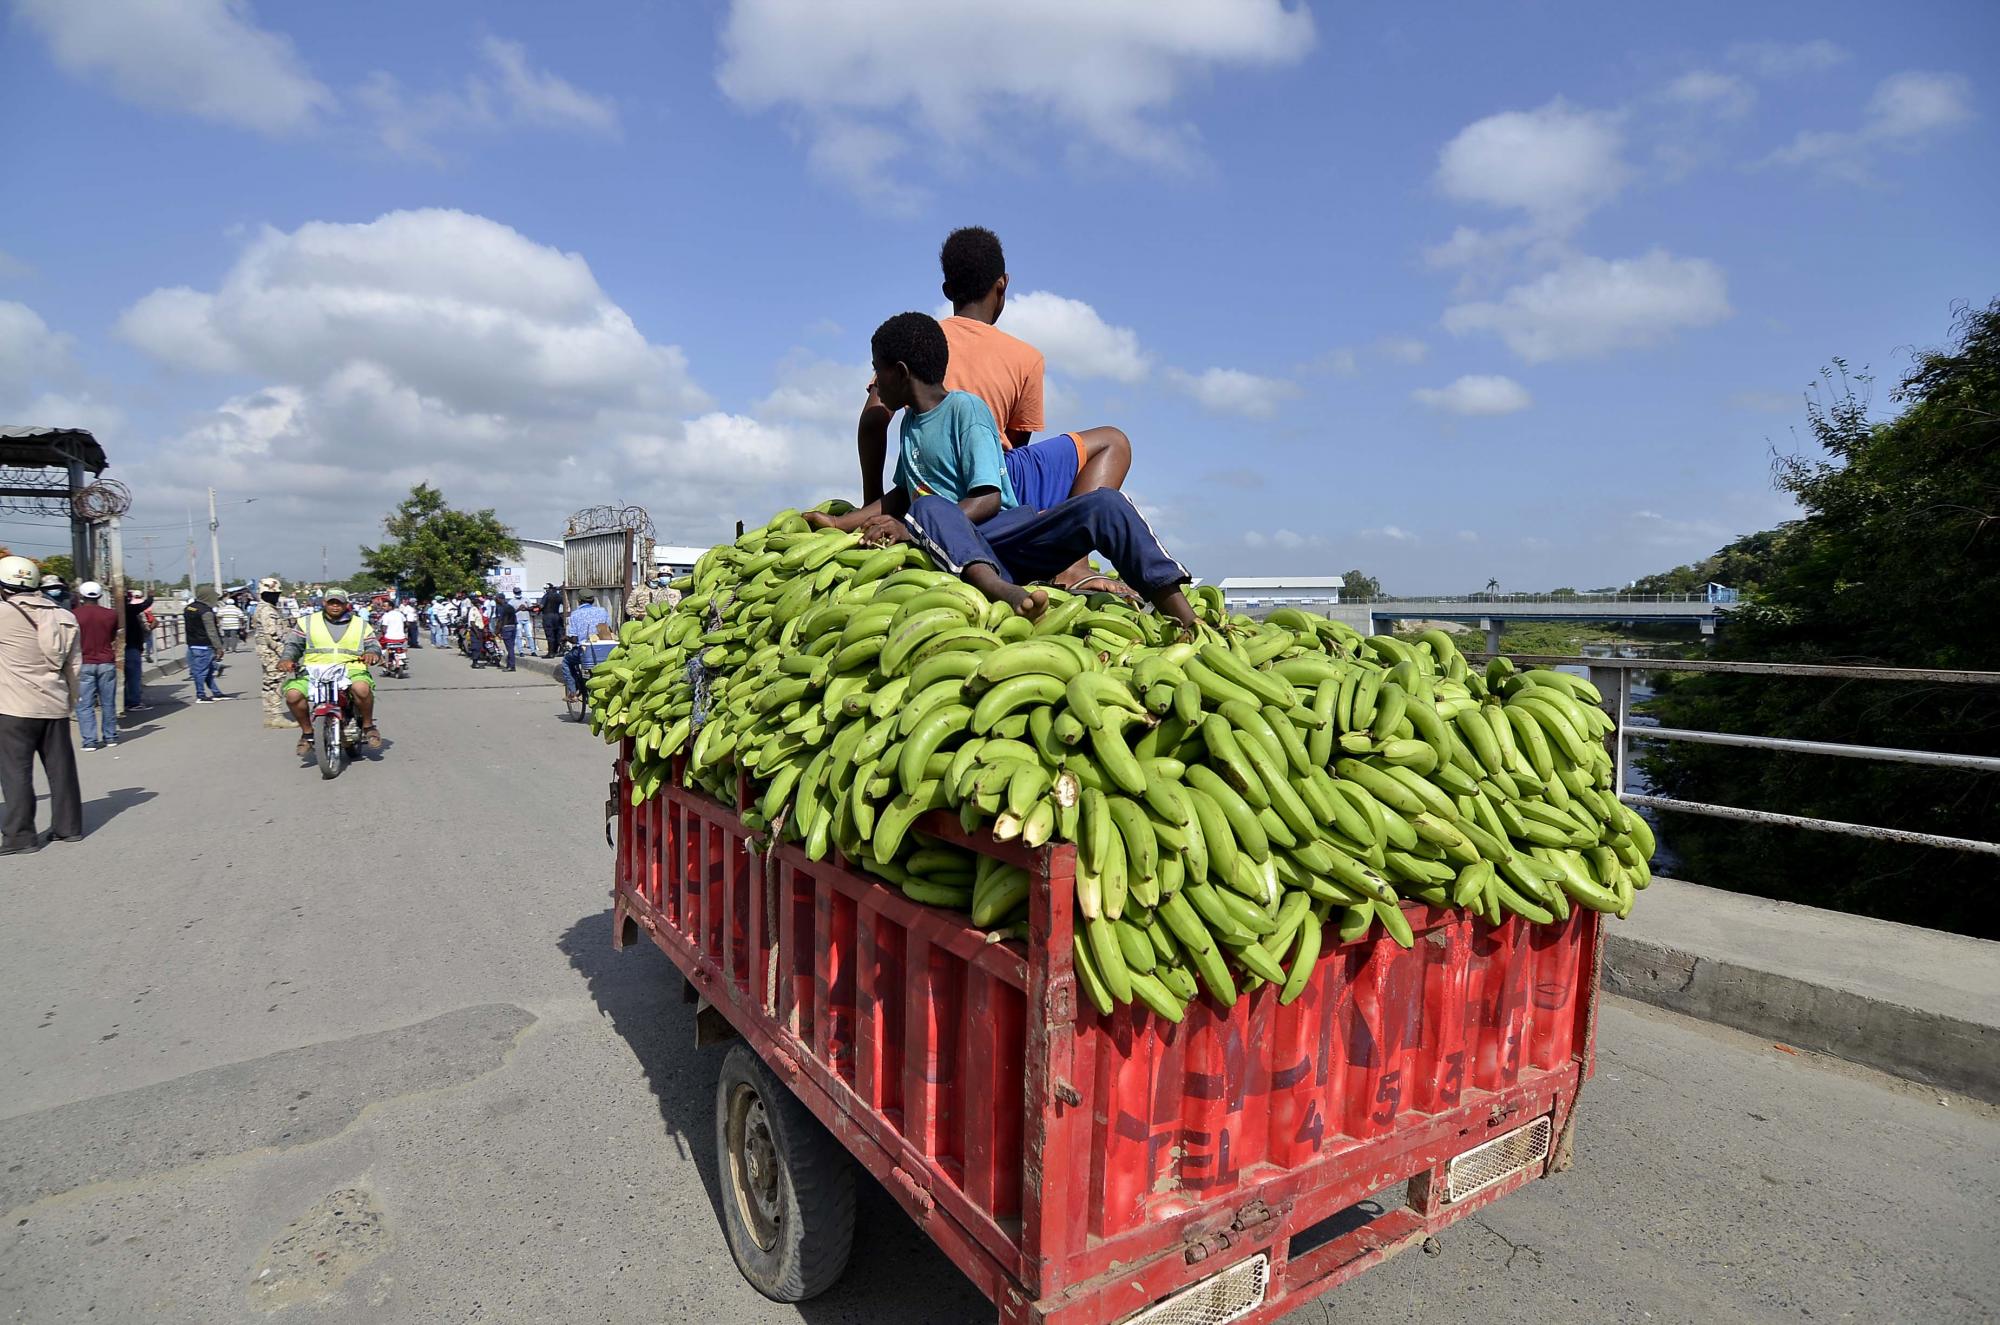 Los plátanos verdes son uno de los productos más comercializados en la zona fronteriza. (Foto: Aneudy Tavárez / Diario Libre)